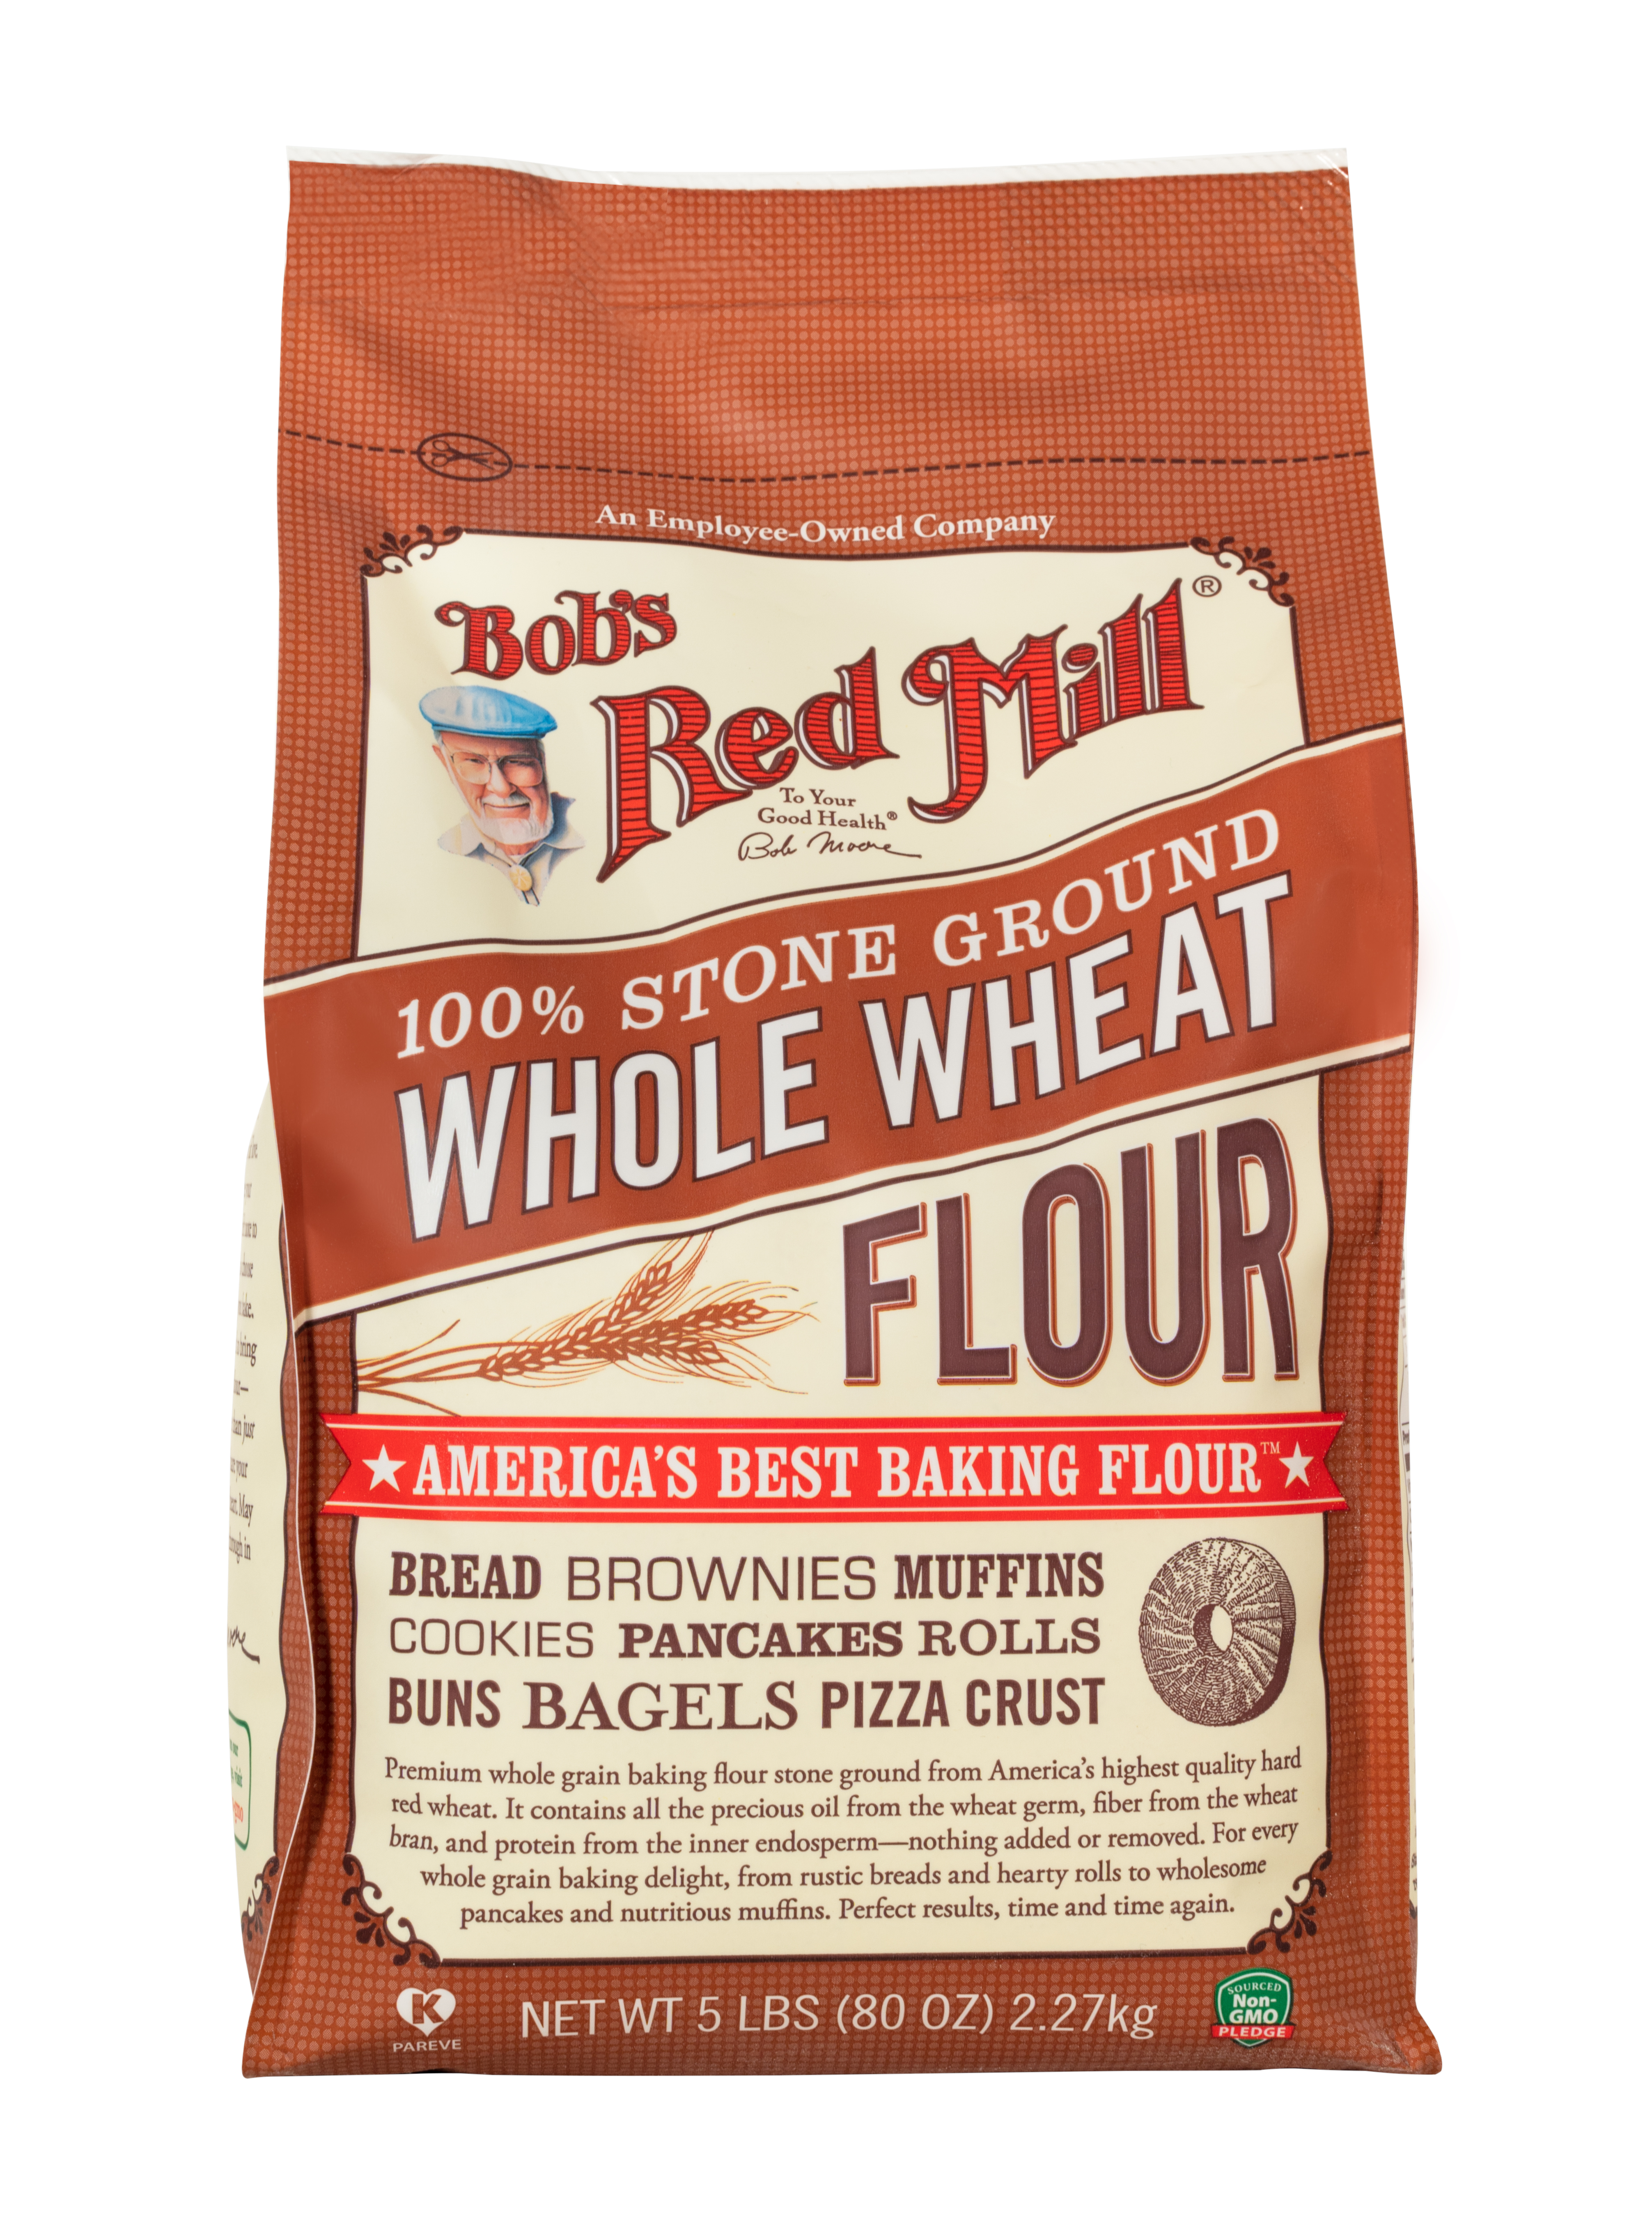 Whole Wheat Flour - front